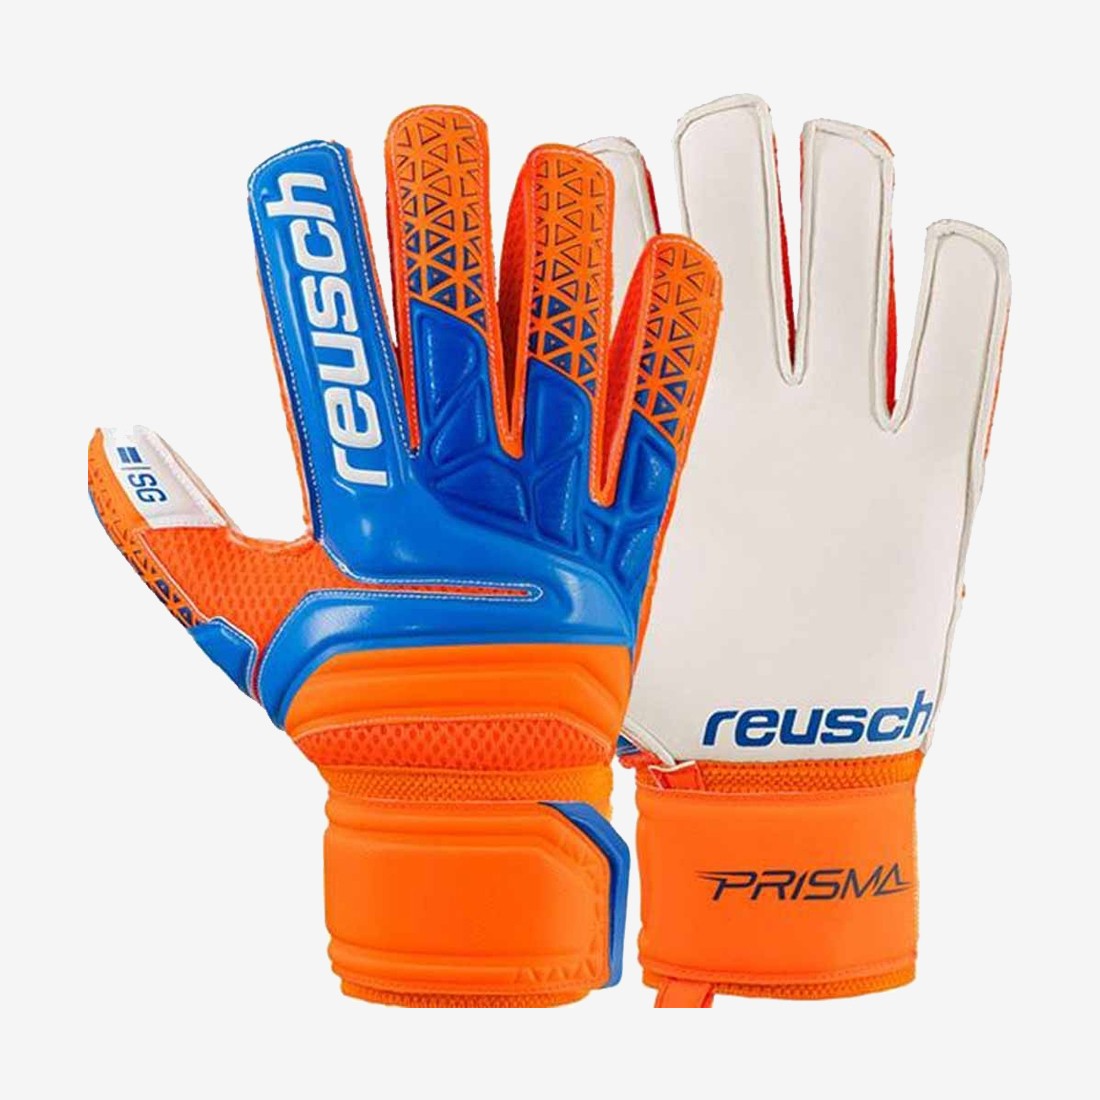 Prisma SG Finger Support - Orange/Blue